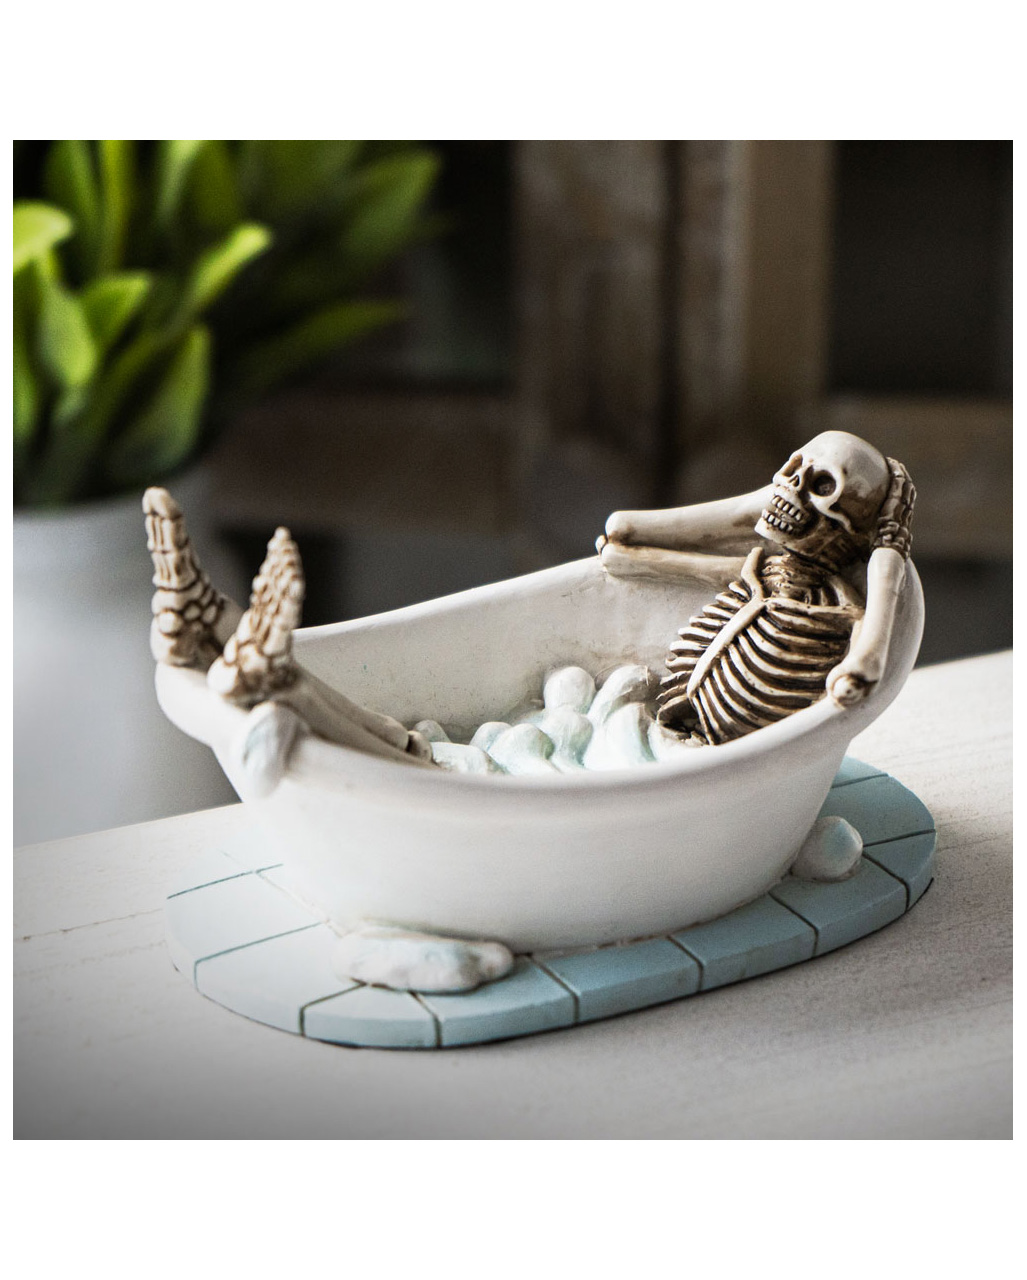 Skelett in der Badewanne als Geschenkartikel kaufen!